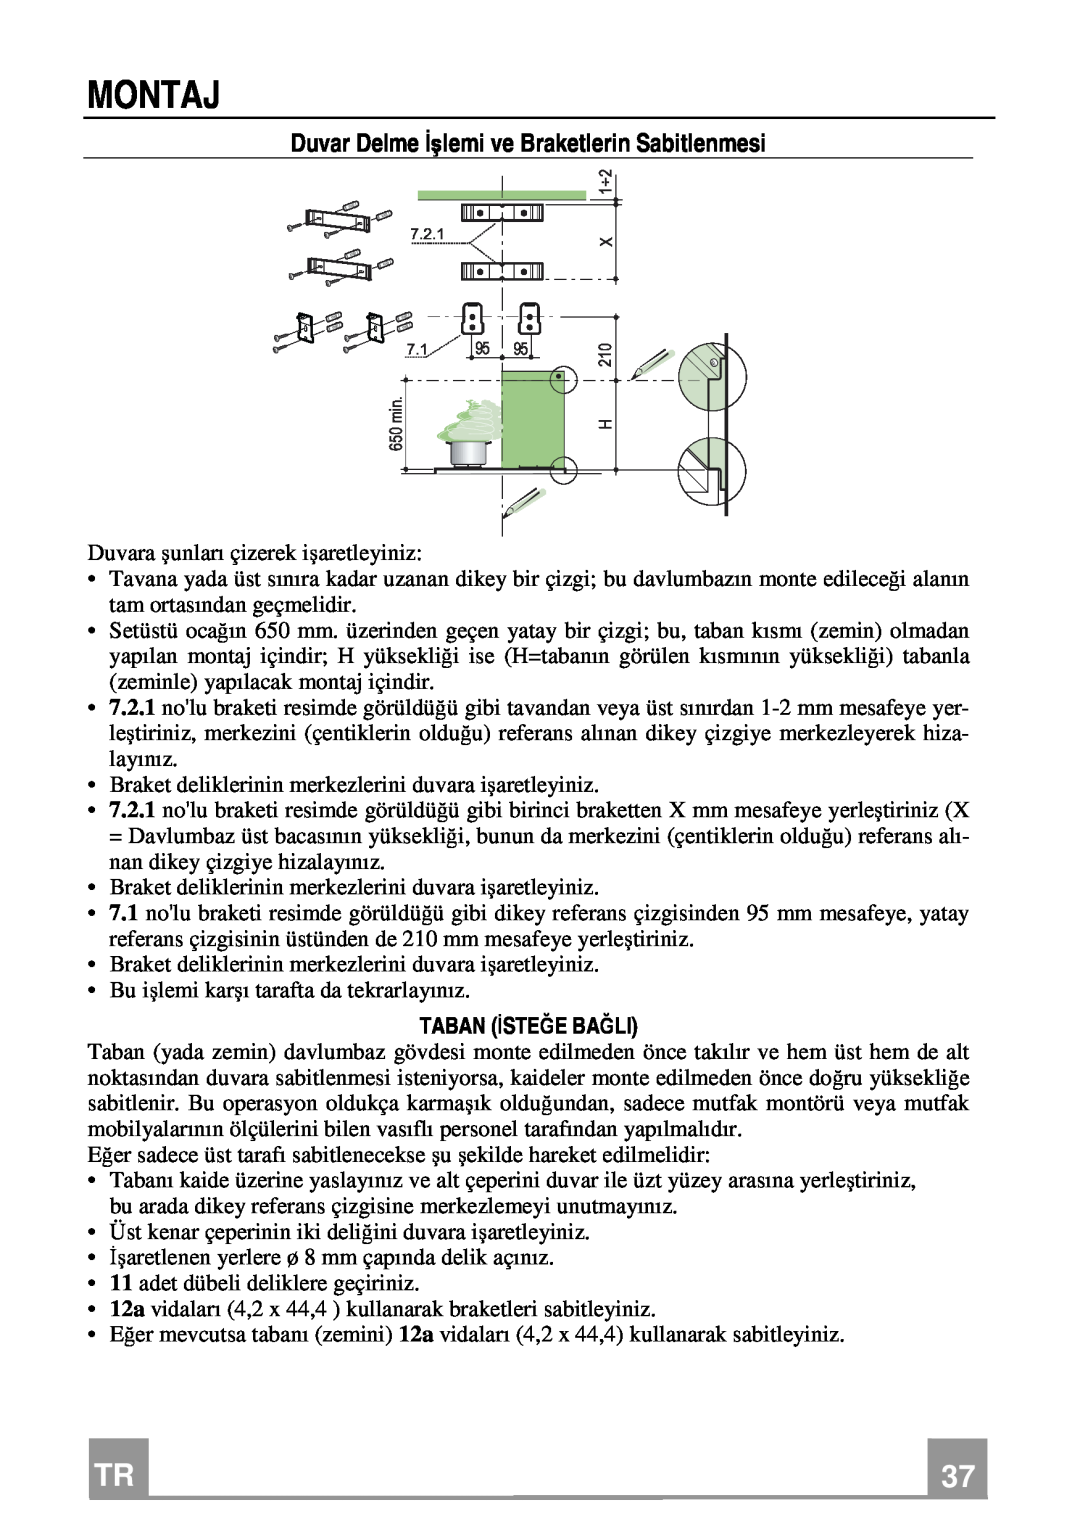 Franke Consumer Products FDL 654, FDL 954 manual Montaj, Duvar Delme İşlemi ve Braketlerin Sabitlenmesi, Taban Isteğe Bağli 